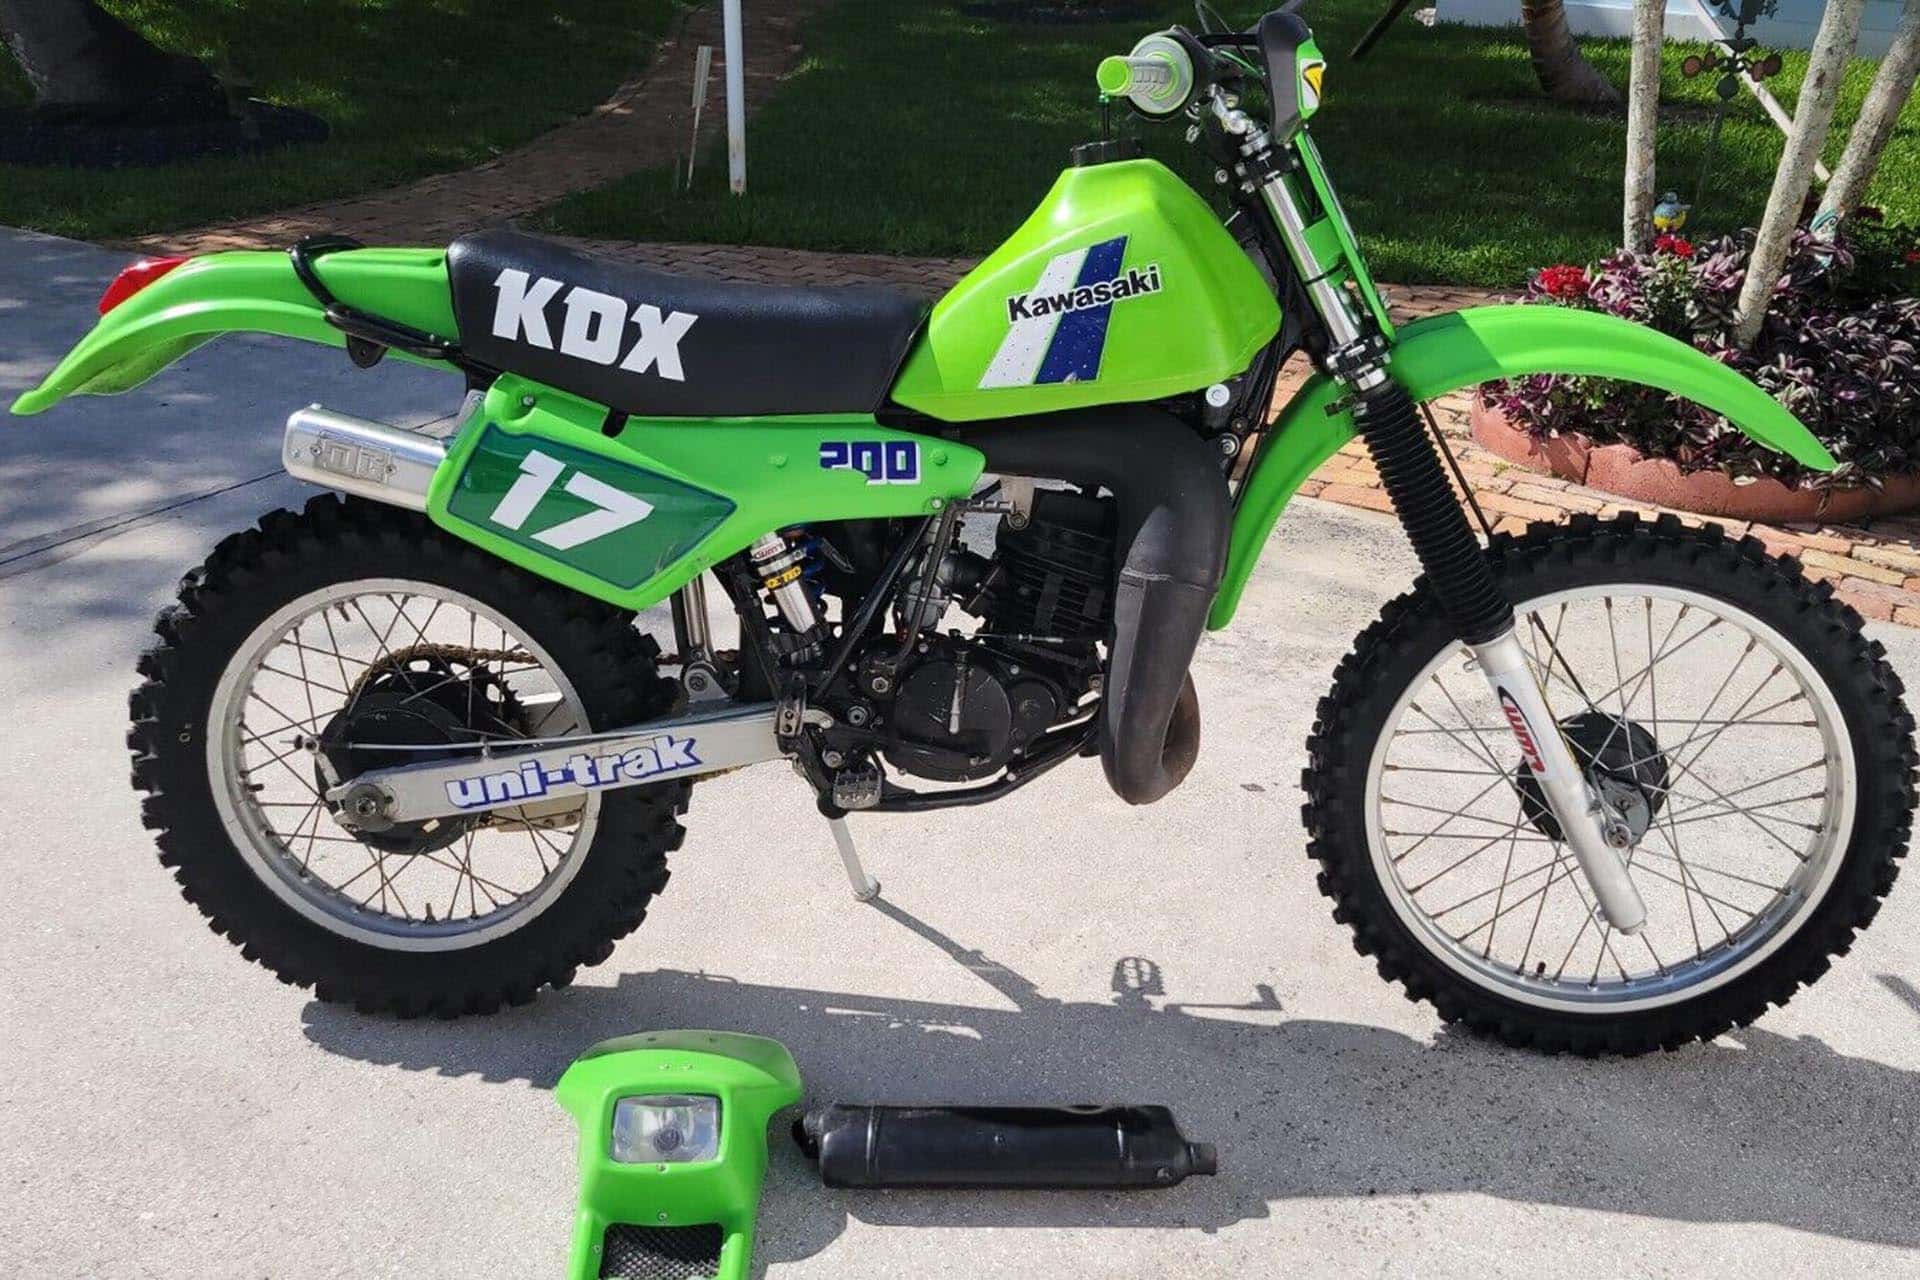 Motos de ensueño a la venta: Kawasaki KDX200 de 1984